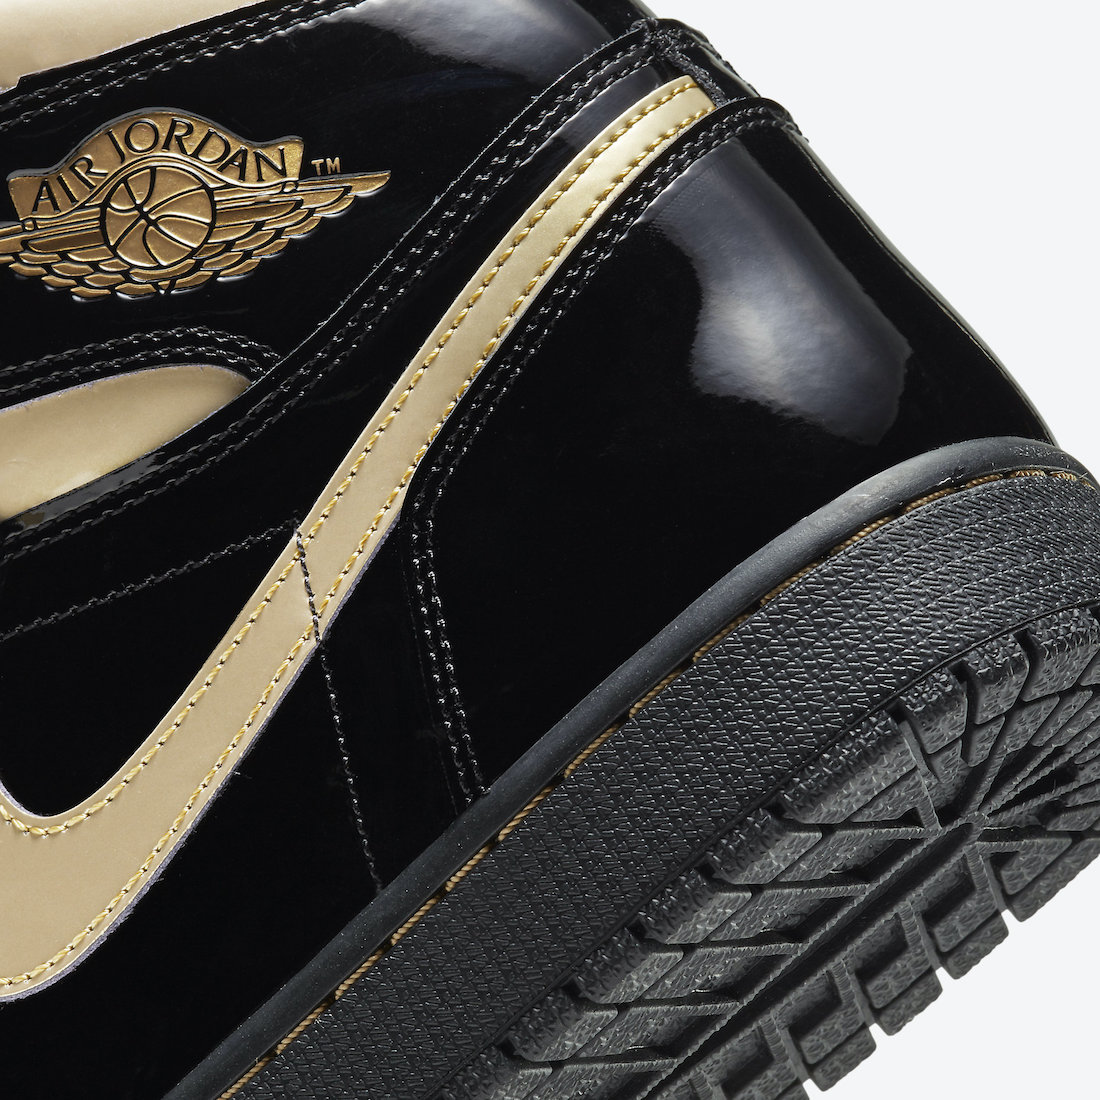 Air Jordan 1 Black Gold 555088-032 Release Date